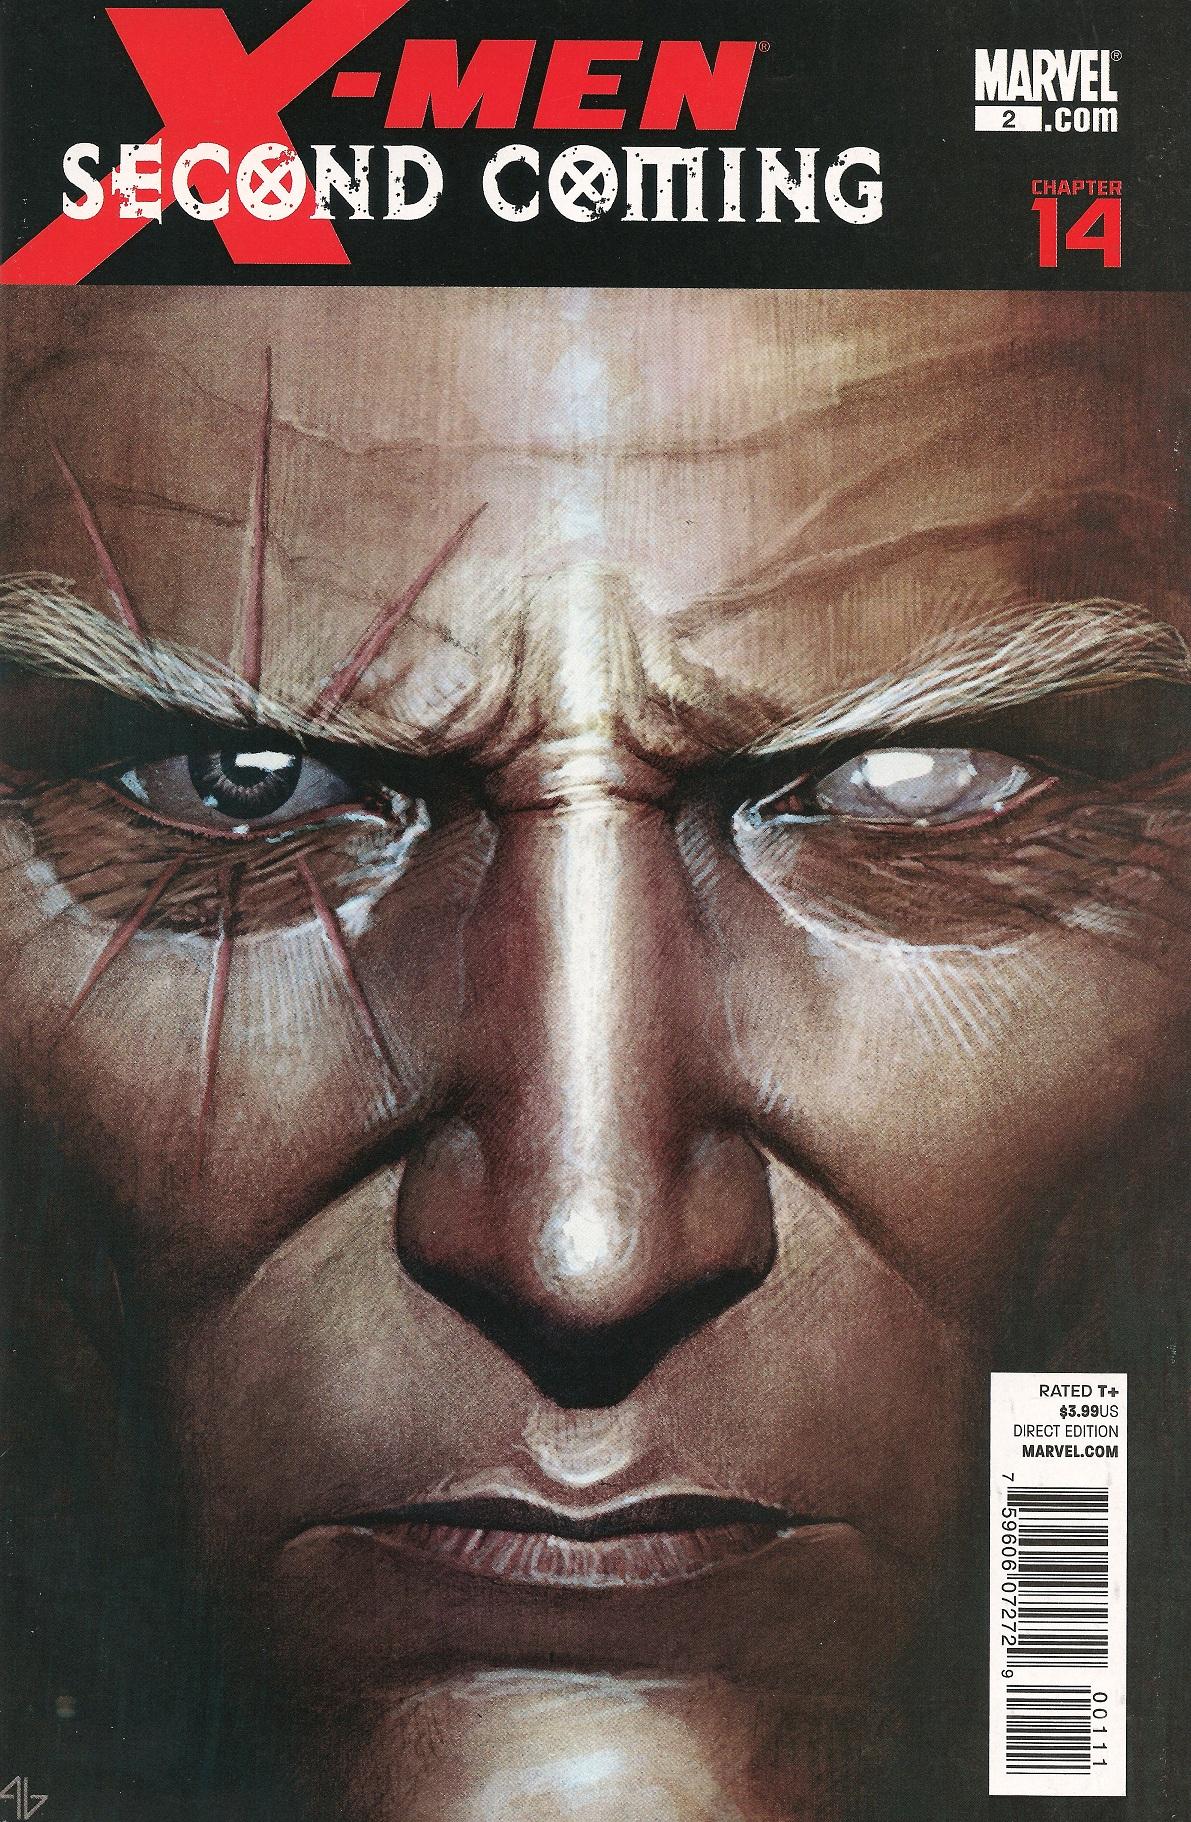 X-Men: Second Coming Vol. 1 #2